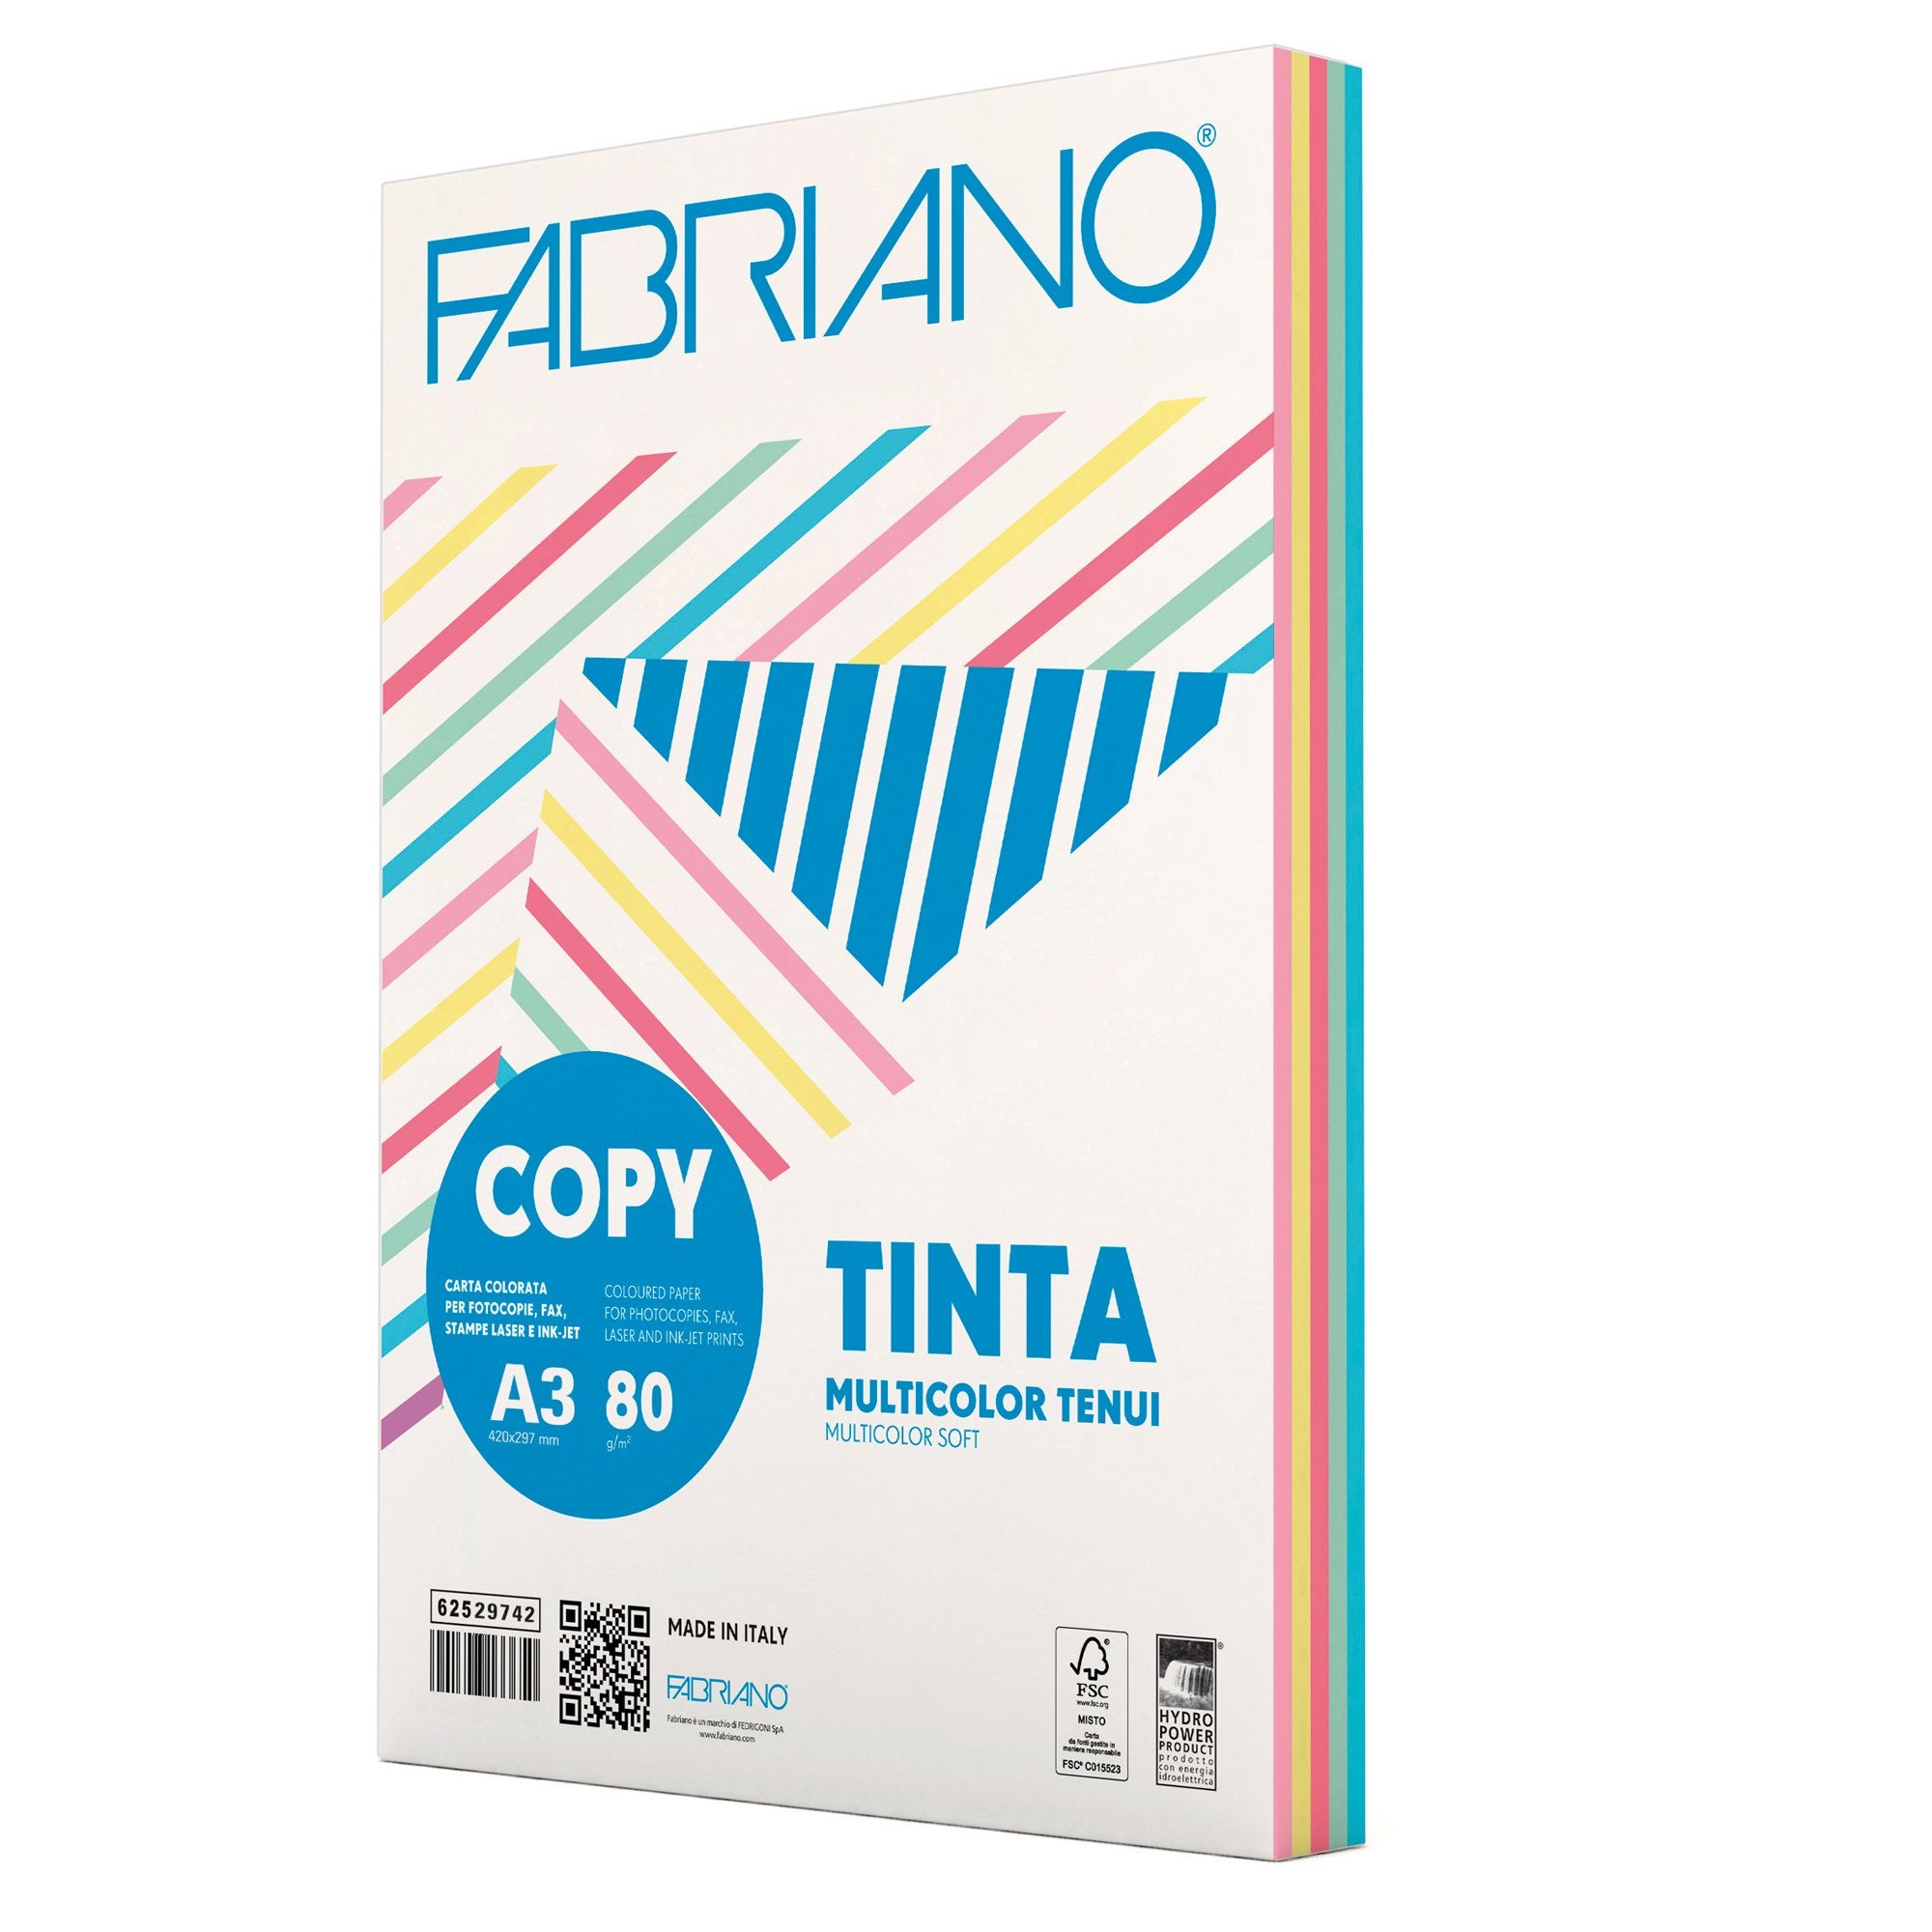 fabriano-carta-copy-tinta-multicolor-a3-80gr-250fg-mix-5-colori-tenui